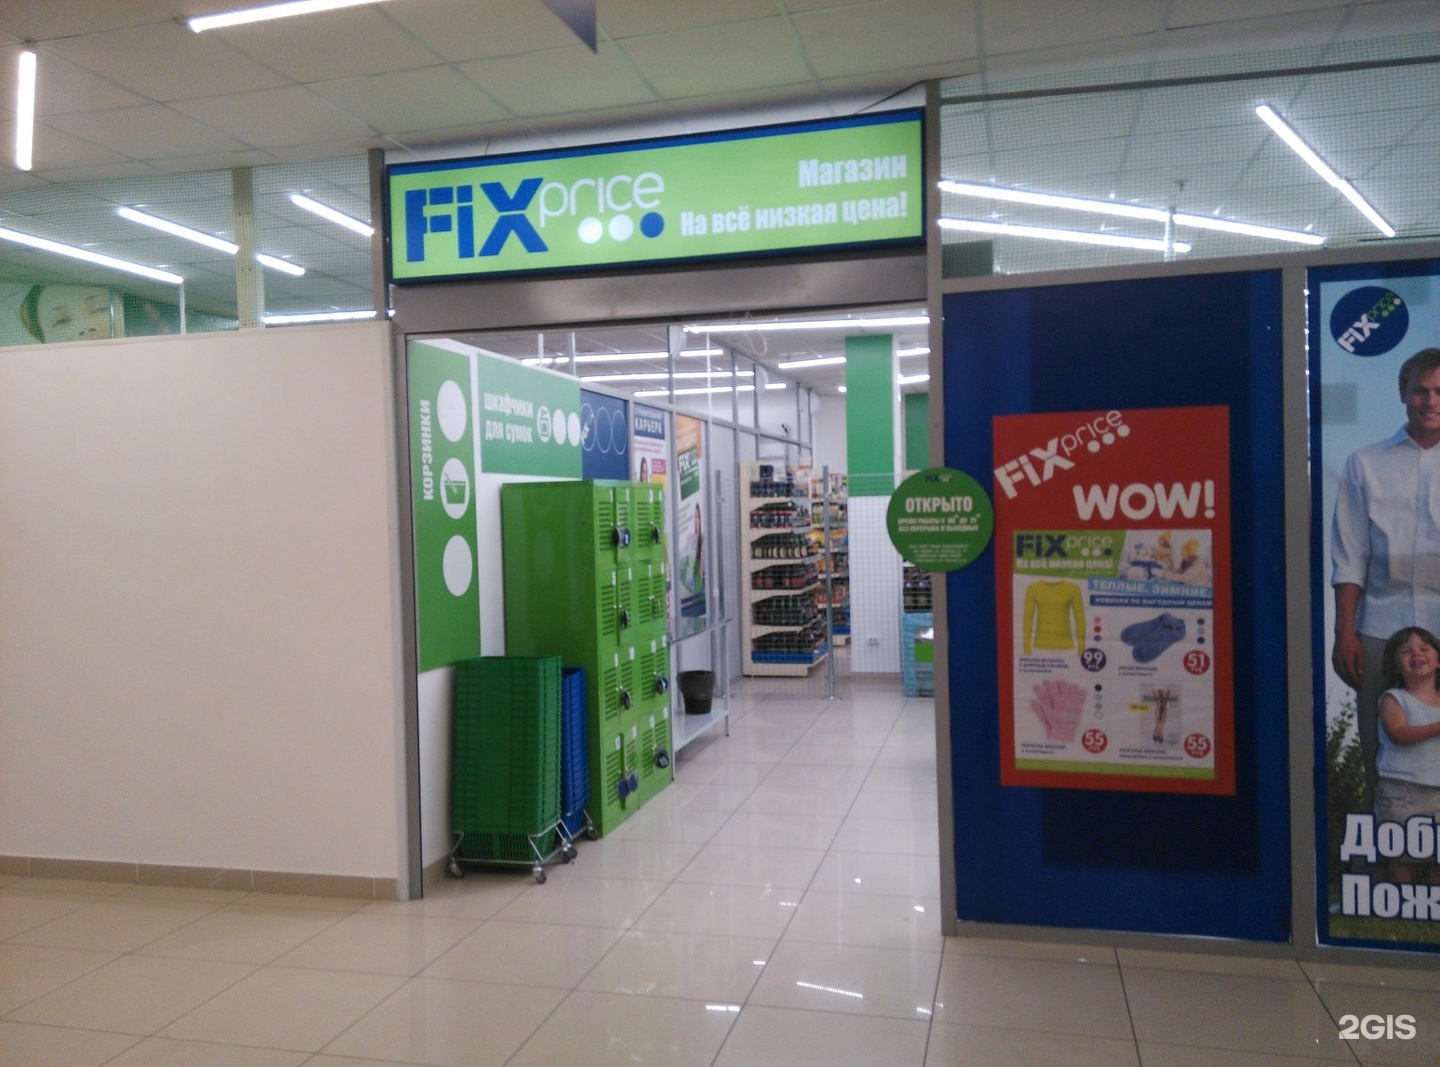 Fixed новосибирск. Fix Price Новосибирск. Склад Fix Price. Fix Price магазин в Новосибирске. "Fix Price" склад Новосибирск.